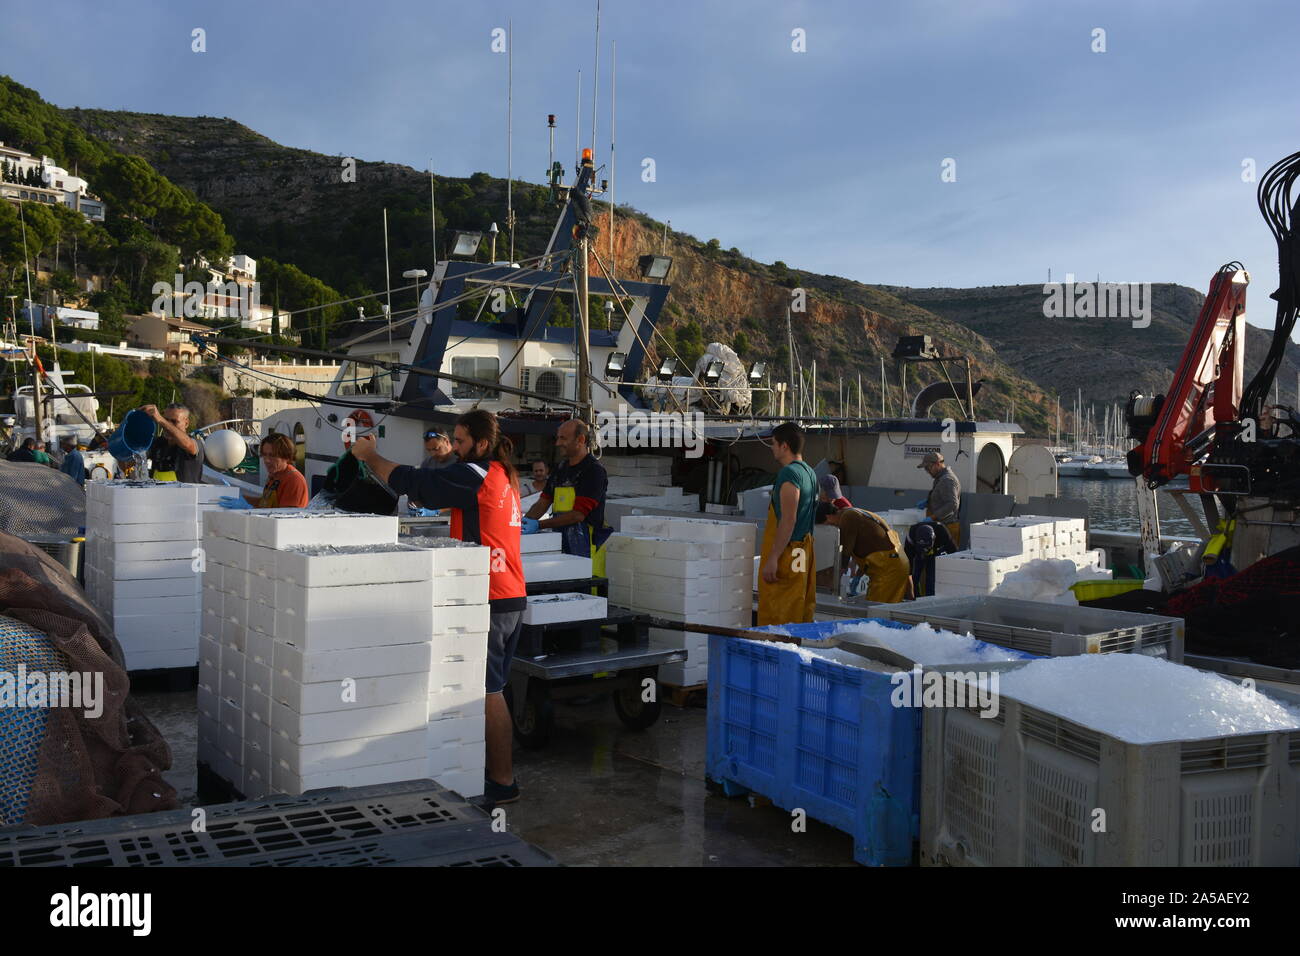 Boîtes de sardines fraîchement pêchés et de glace d'être déchargé d'un chalutier de pêche, avec les pêcheurs en bateau sur les cirés en arrière-plan, Javea, Espagne Banque D'Images